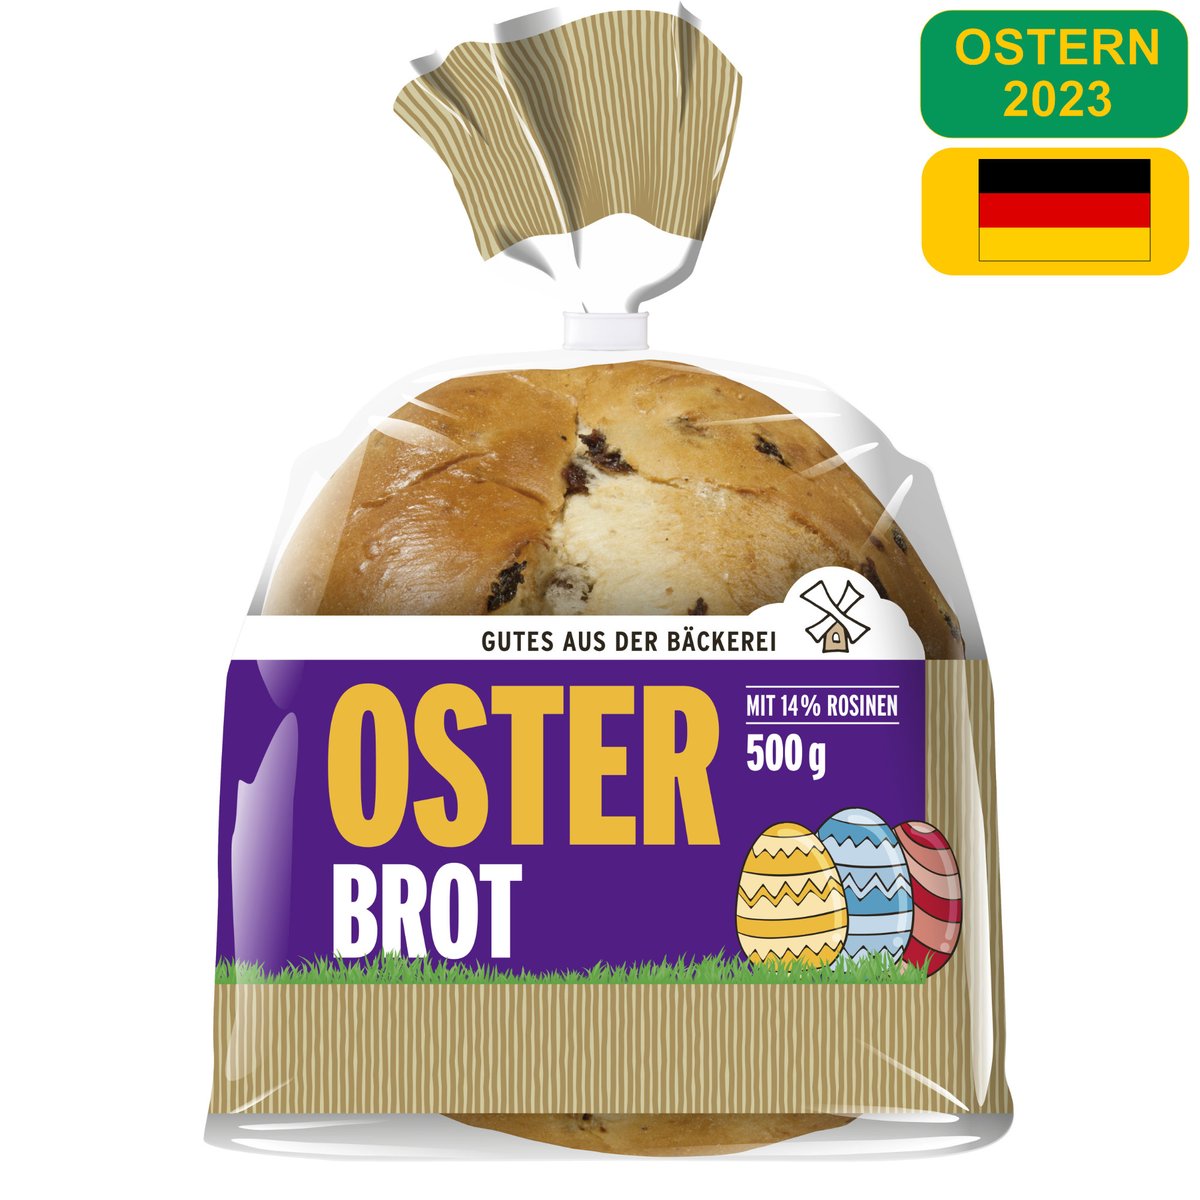 Du hast noch keine Geschenkidee für Ostern 2023 ? OK Brot geht immer... #harry hol den Wagen - oder das #Osterbrot ? Das ultimative must have #Ostern #brot #food #germanfood #foodlover #germanfood #eastern #holiday #bread #breakfast